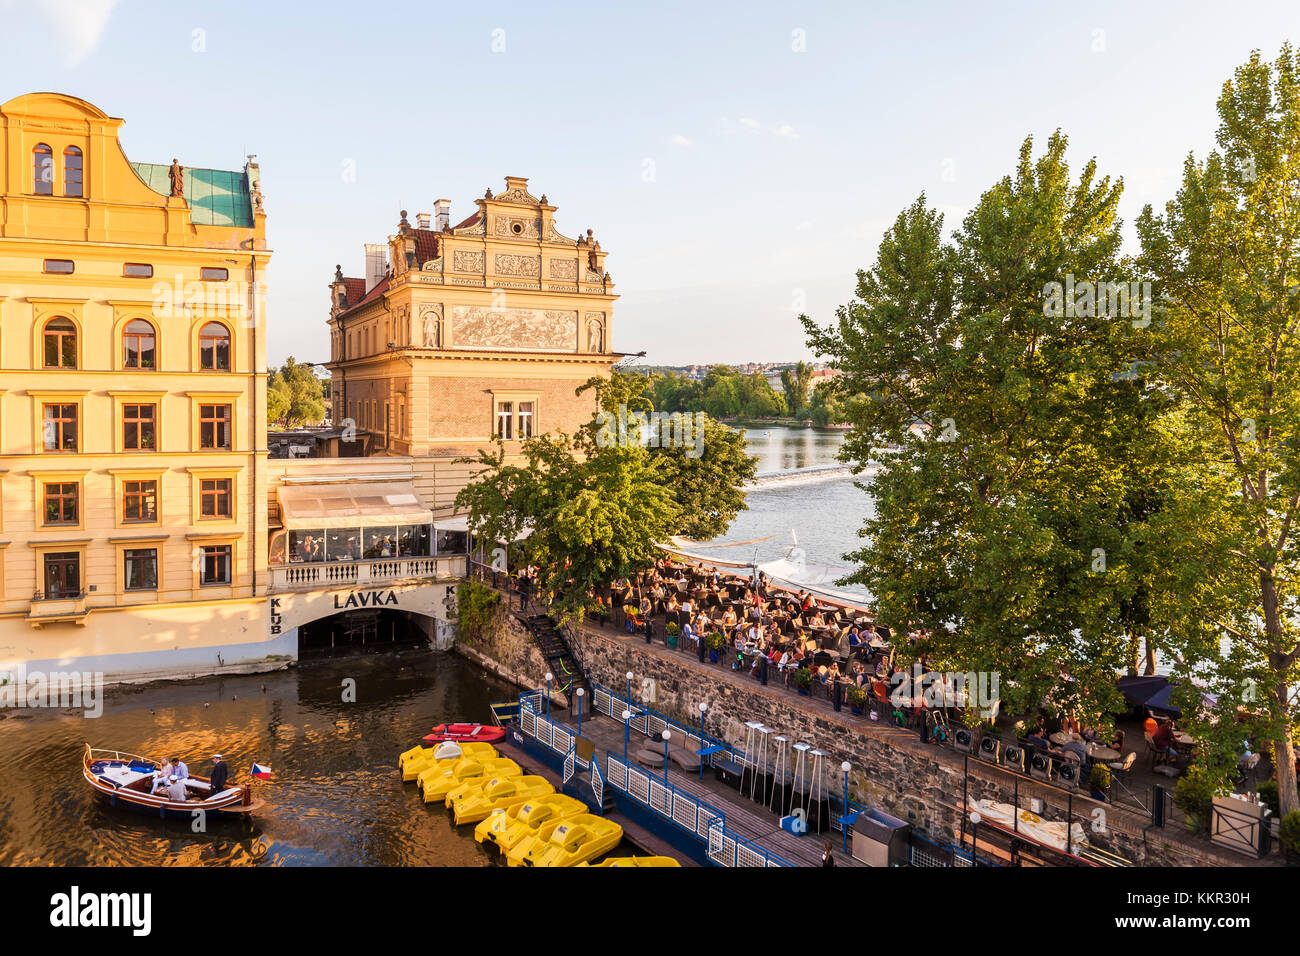 Czech, Praga, casco antiguo, Vltava, restaurante club Lavka, terraza, barco de excursión Foto de stock